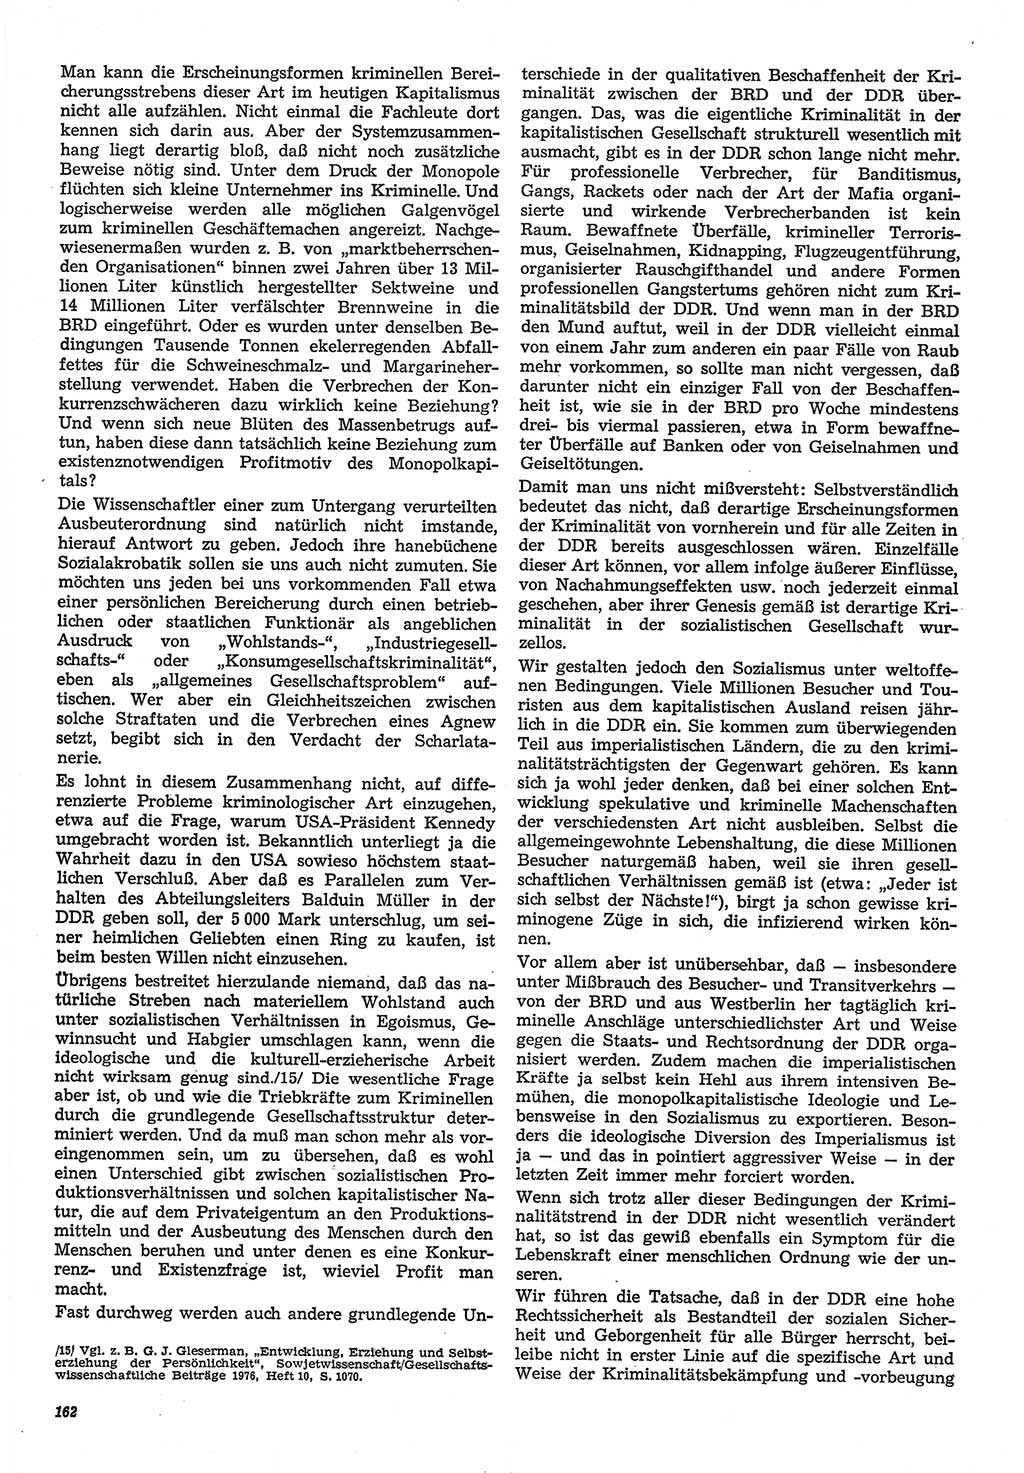 Neue Justiz (NJ), Zeitschrift für Recht und Rechtswissenschaft-Zeitschrift, sozialistisches Recht und Gesetzlichkeit, 31. Jahrgang 1977, Seite 162 (NJ DDR 1977, S. 162)